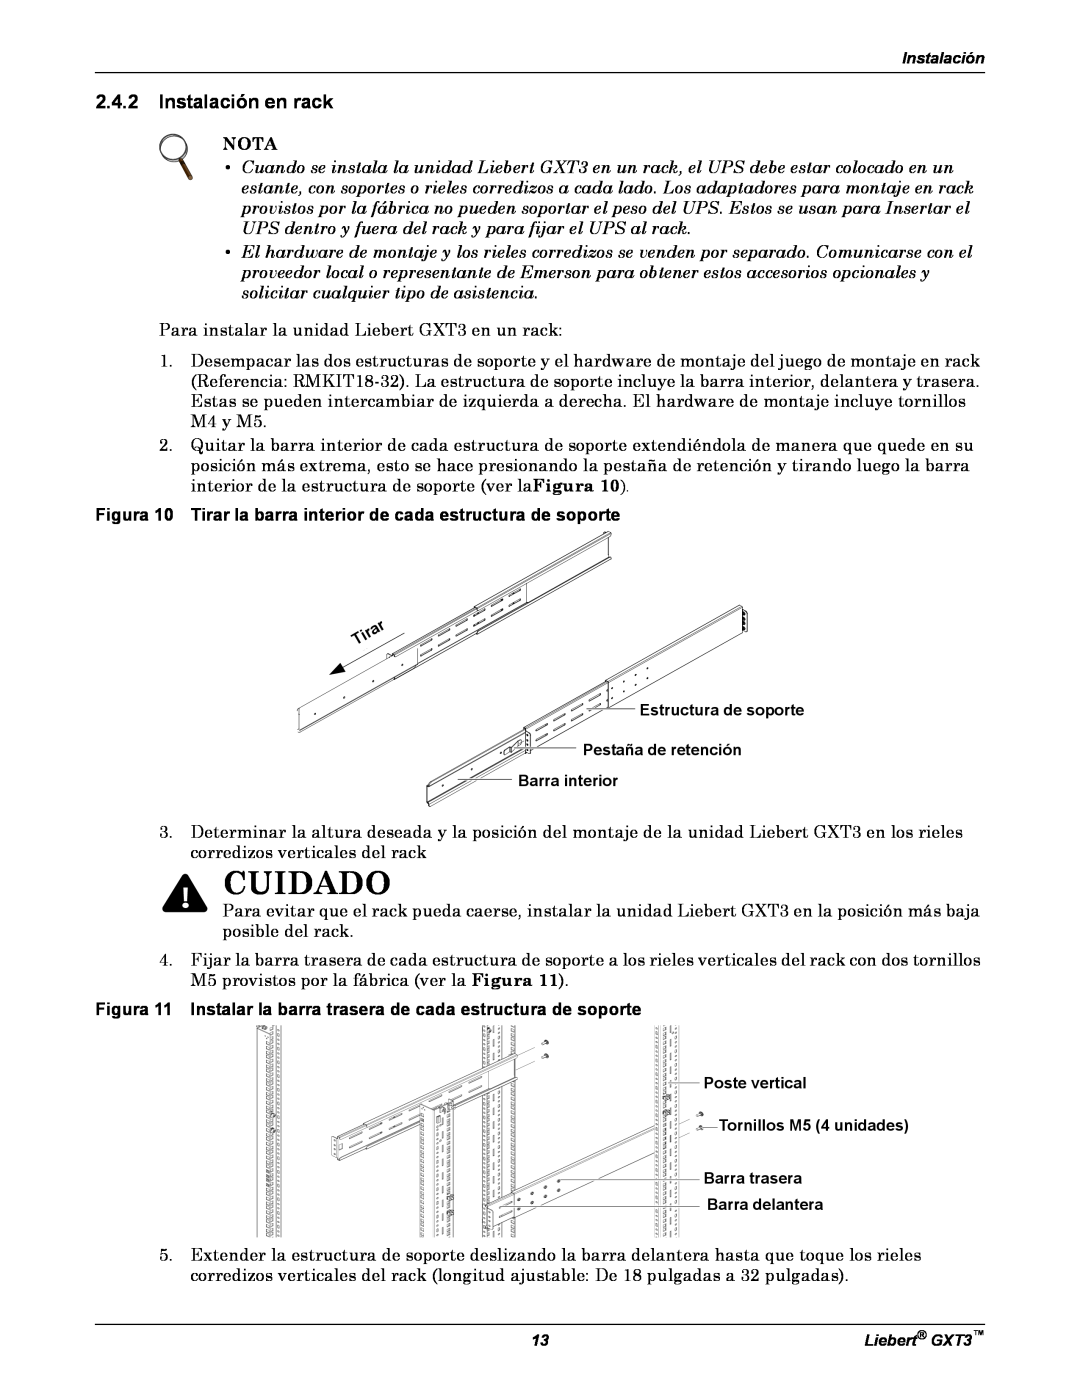 Emerson GXT3 manual Instalación en rack, Cuidado, Nota, Figura 10 Tirar la barra interior de cada estructura de soporte 